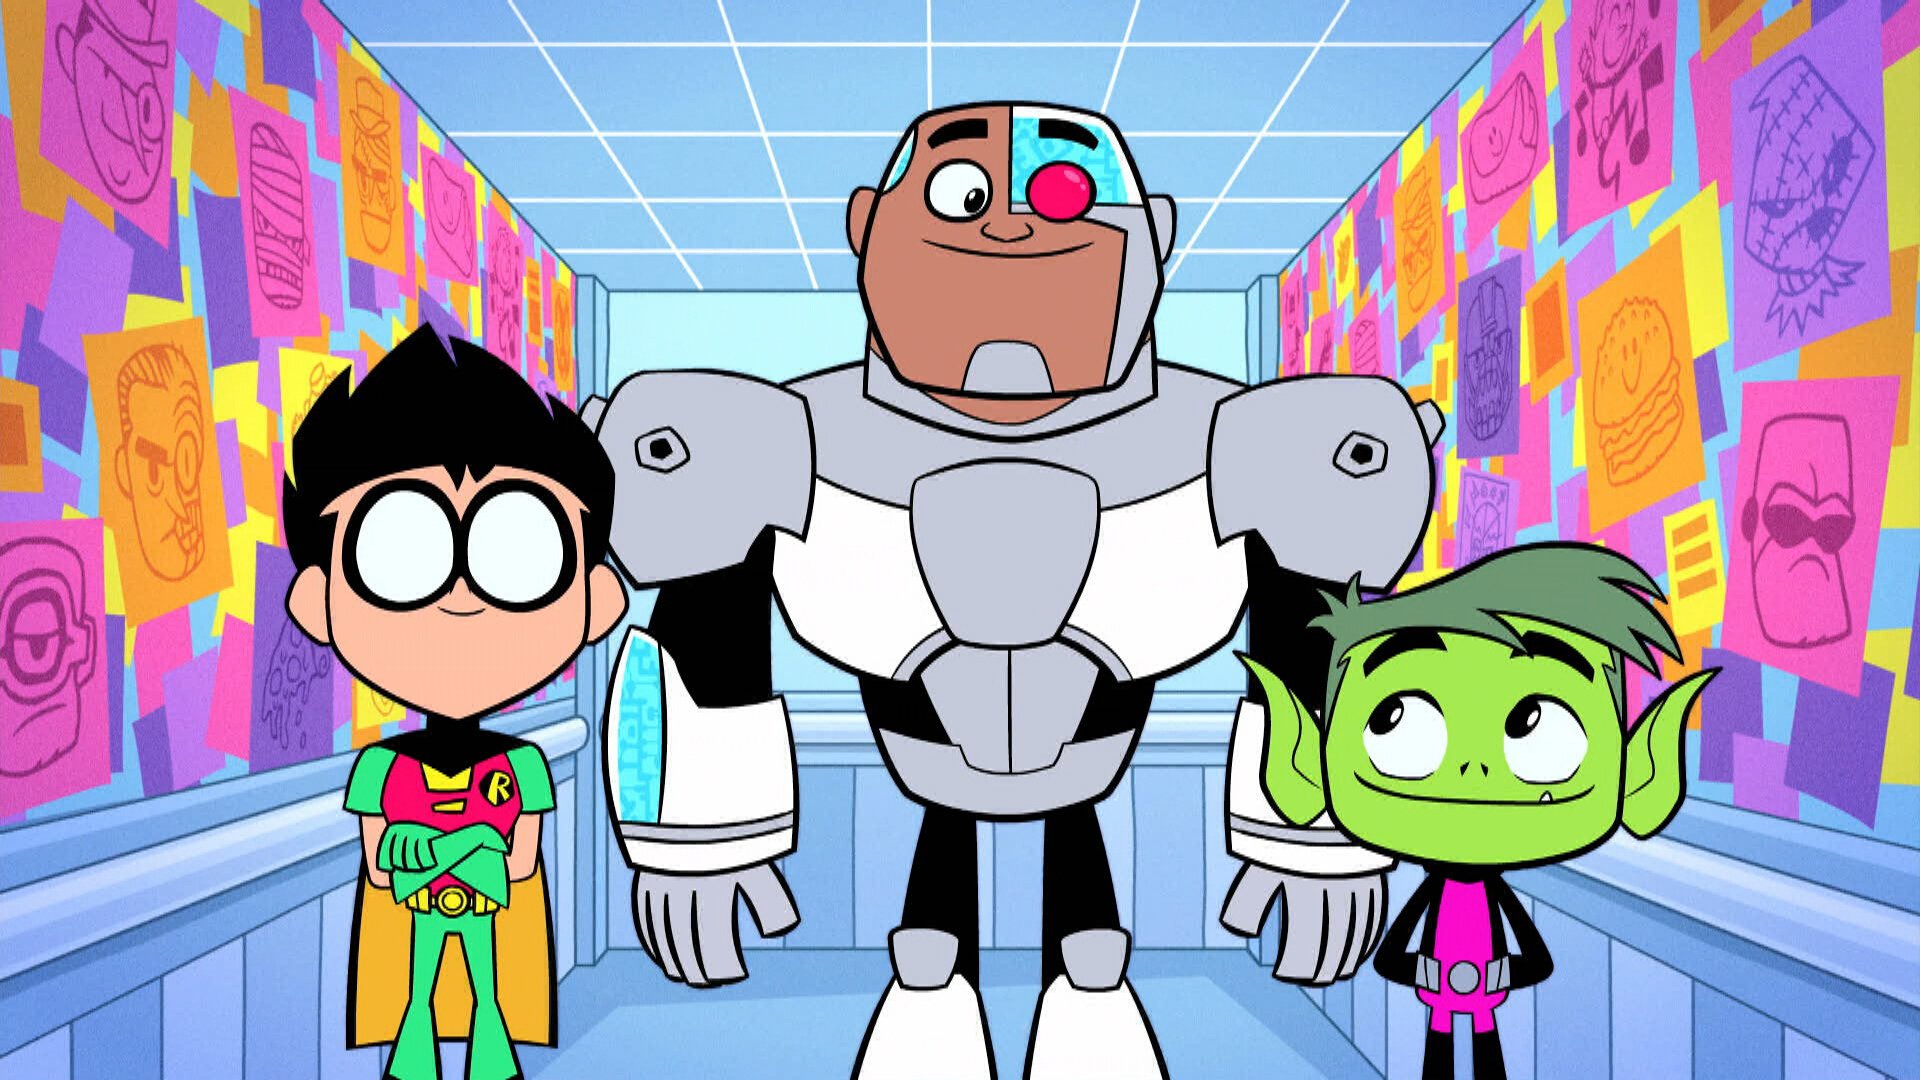 Watch Teen Titans Go! Season 1 Episode 18 Online - Stream Full Episodes